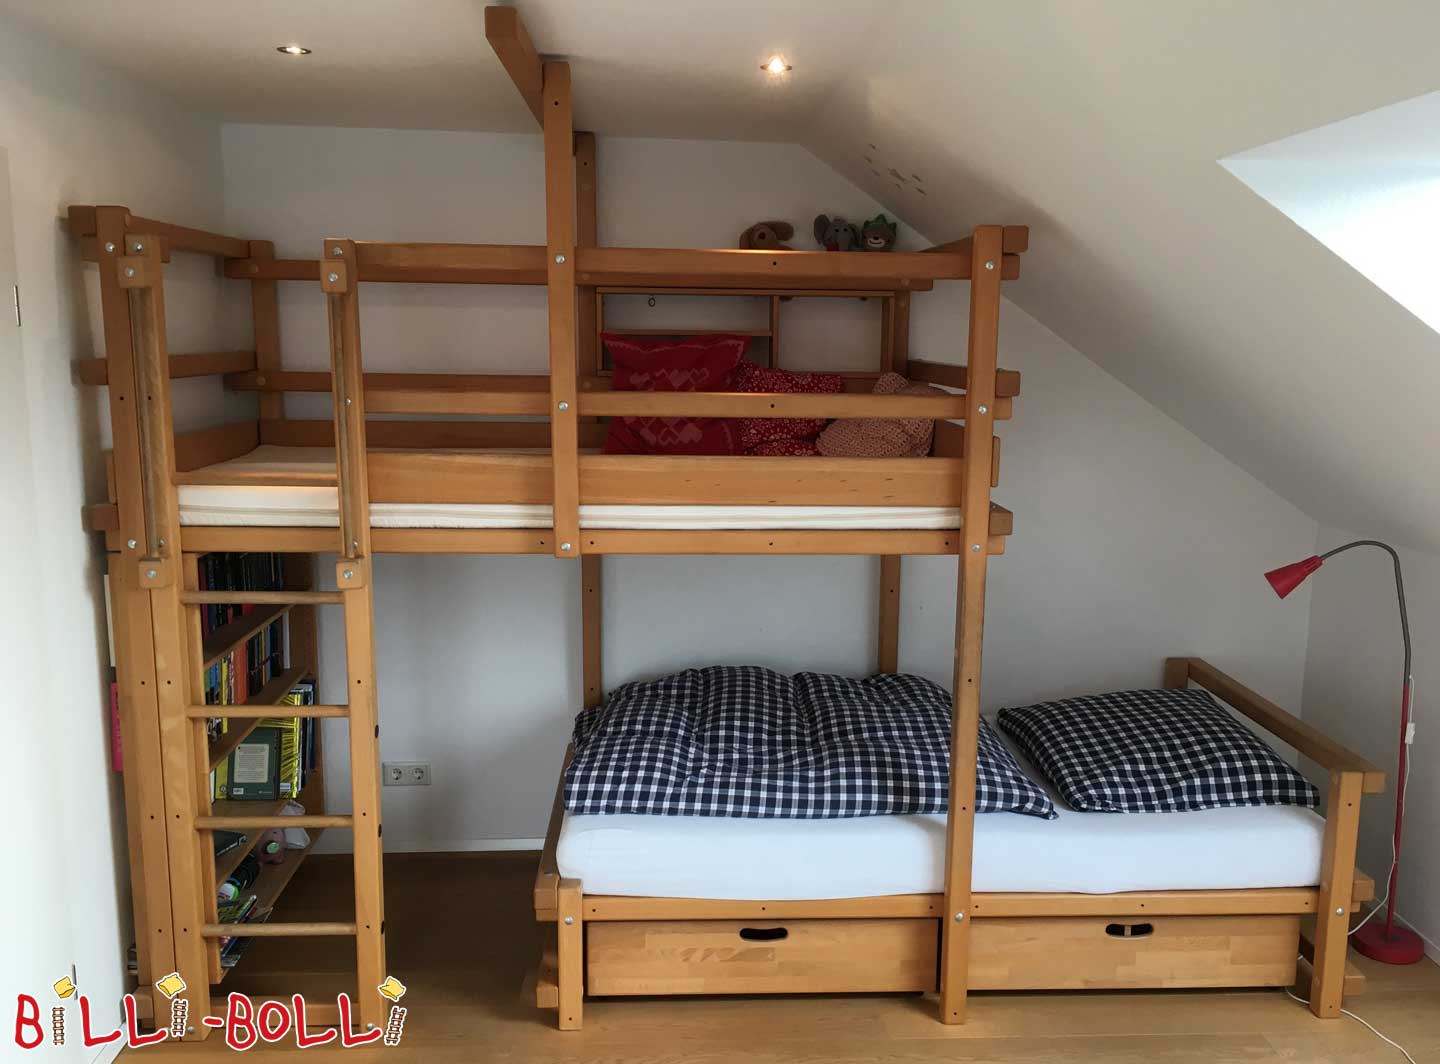 Pomak kreveta na kat, 100 x 200 cm, bukva nauljena voskom (Kategorija: Korišteni krevet na kat)